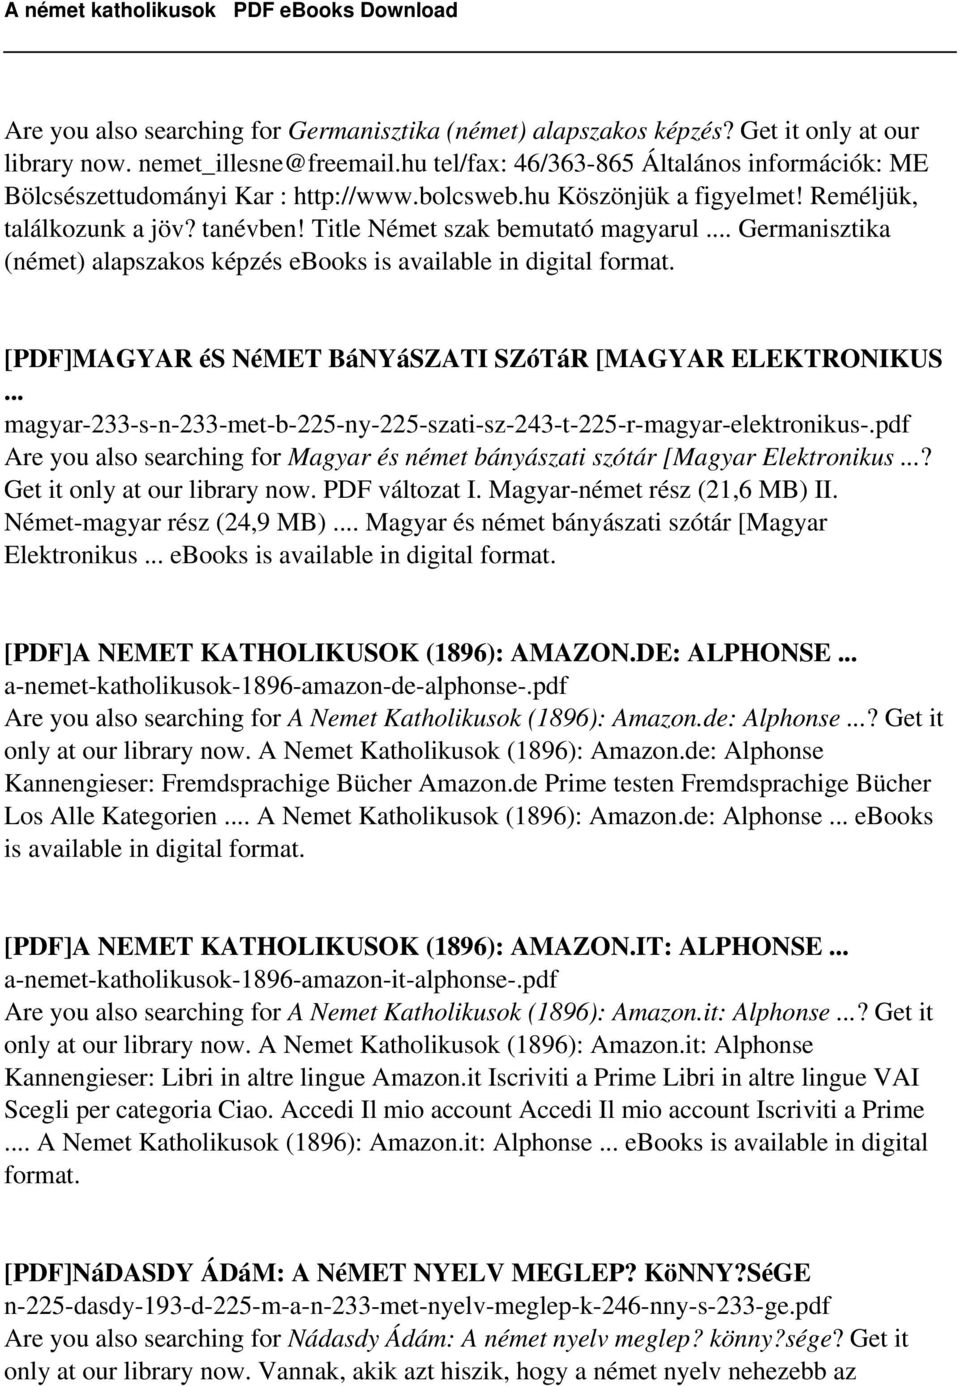 .. Germanisztika (német) alapszakos képzés ebooks is available in digital [PDF]MAGYAR és NéMET BáNYáSZATI SZóTáR [MAGYAR ELEKTRONIKUS.